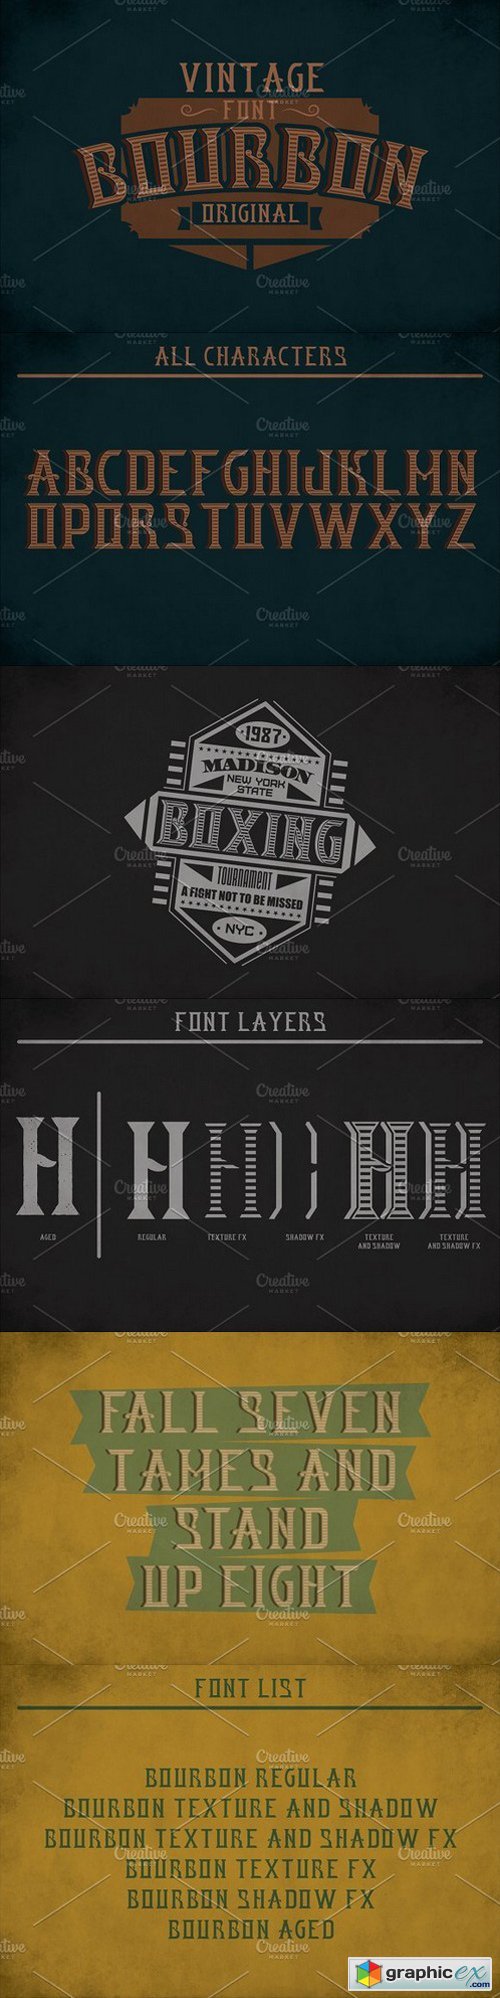 Bourbon Label Typeface